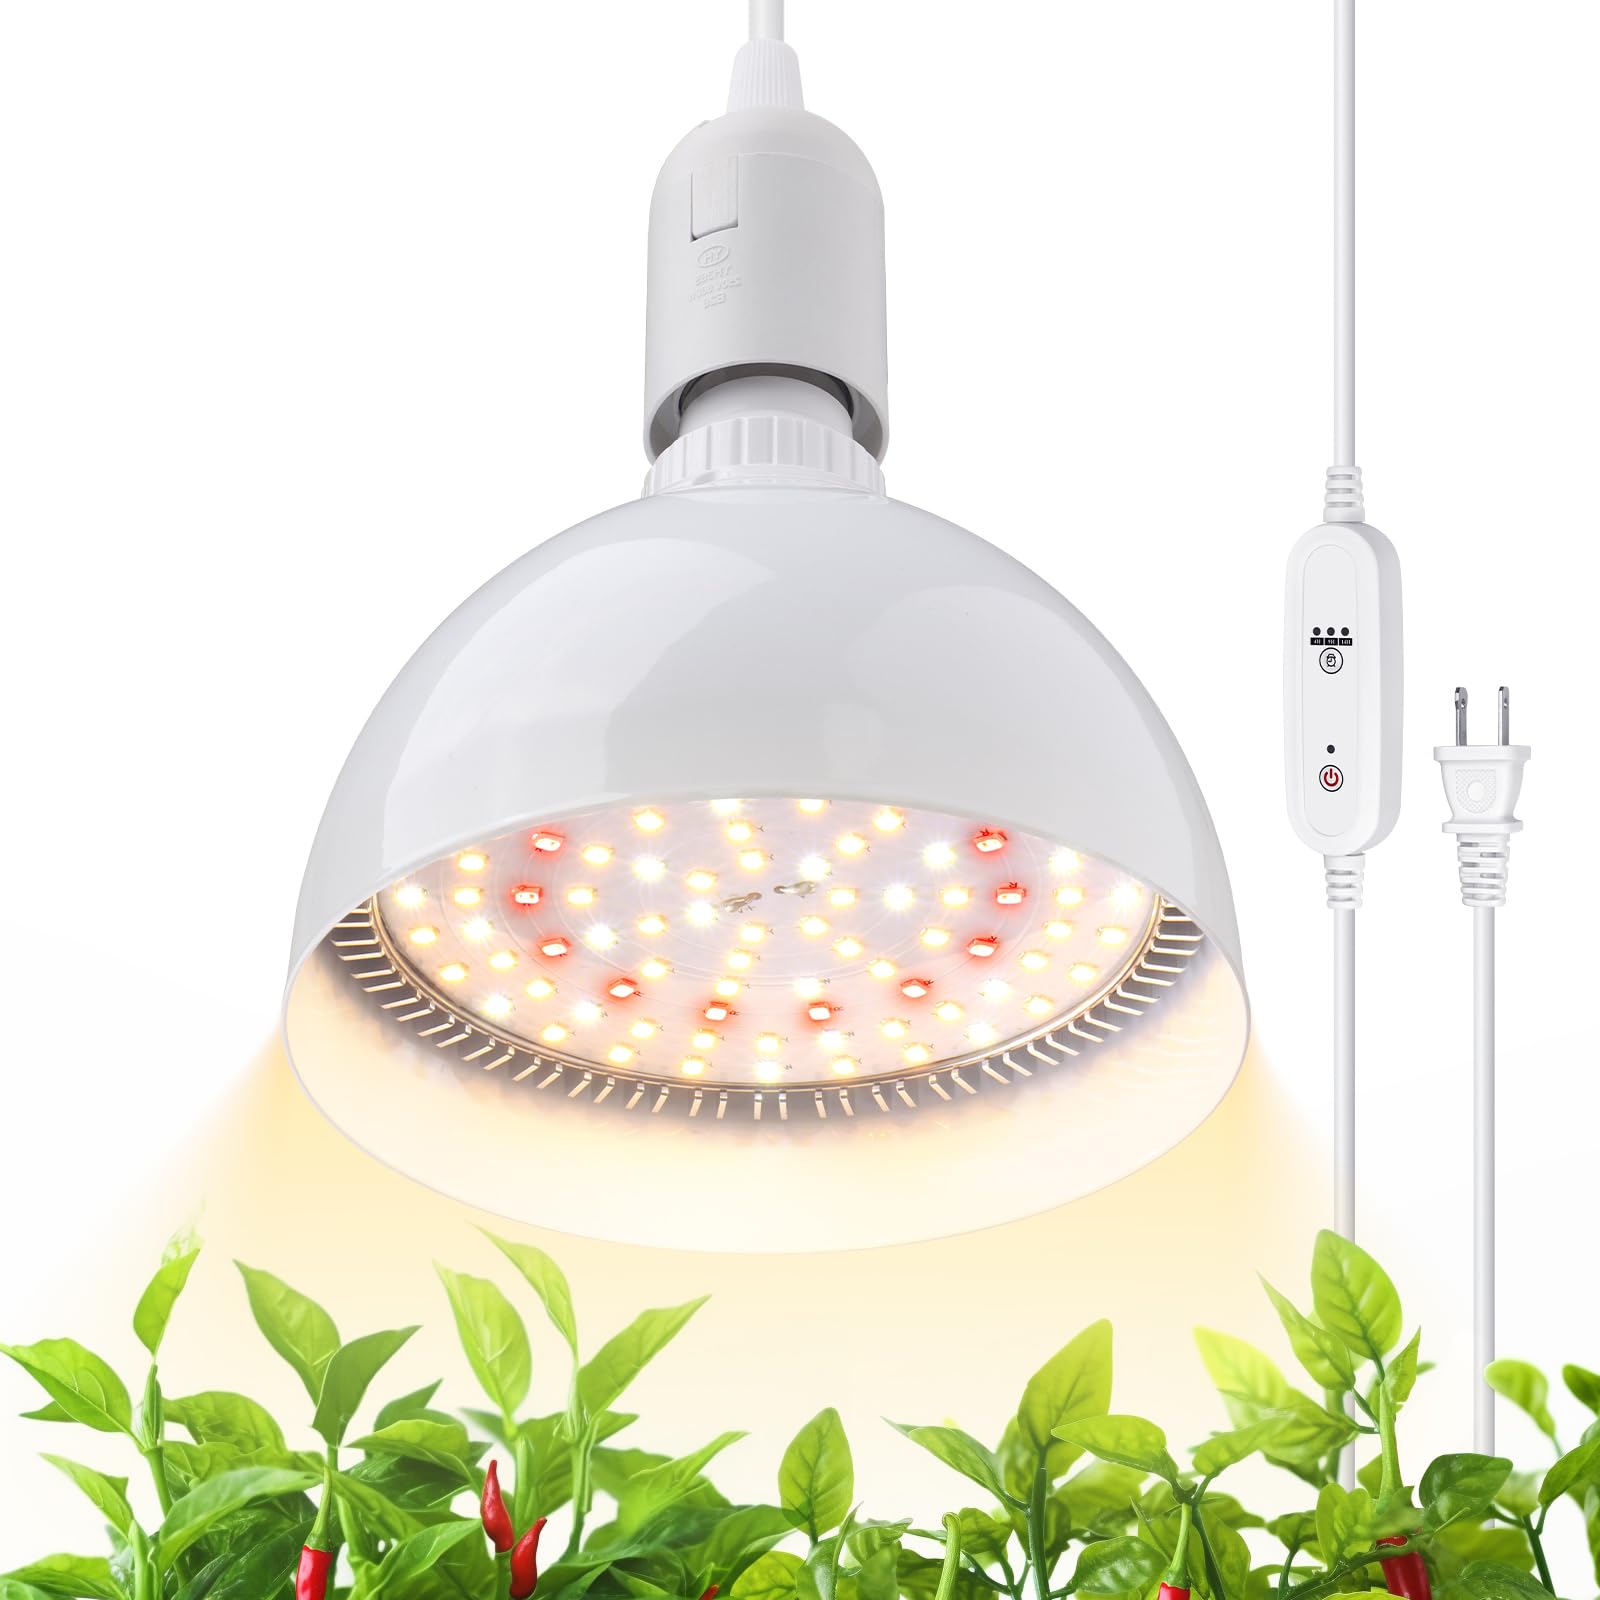 Hanging LED Grow Light Bulb,4FT,25W,Full Spectrum,1 Pack,TB25(M) - Barrina led